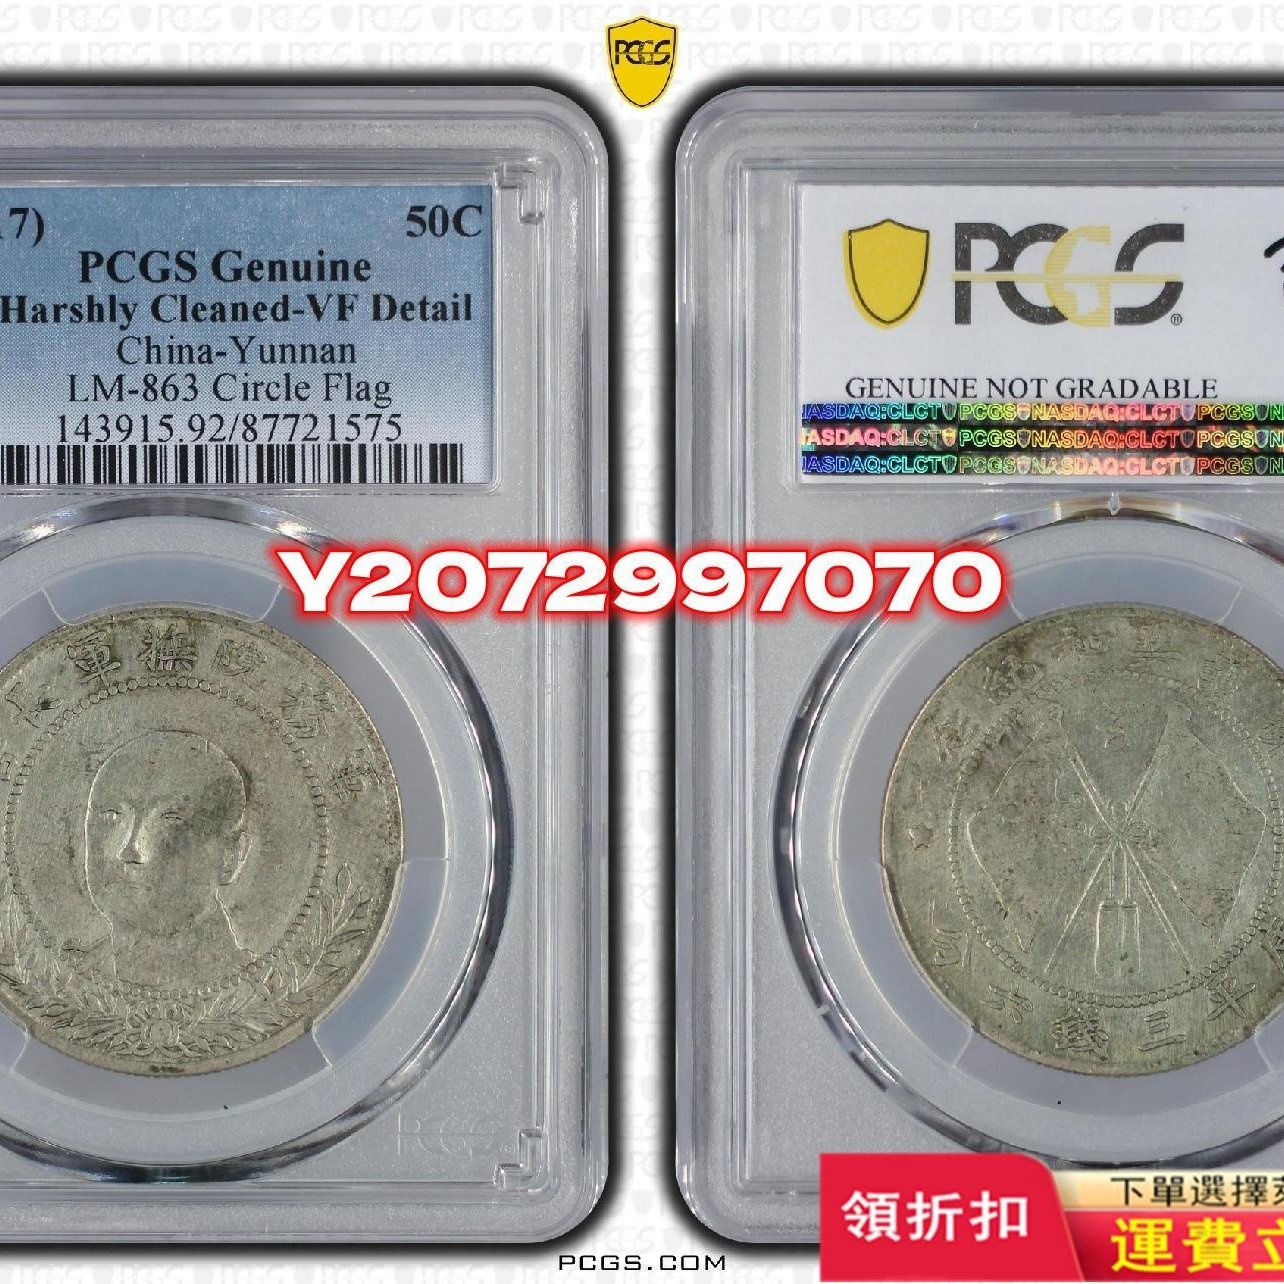 超歓迎された 【PCGS鑑定済最高グレード】中国硬貨 中華帝国&金本位幣2